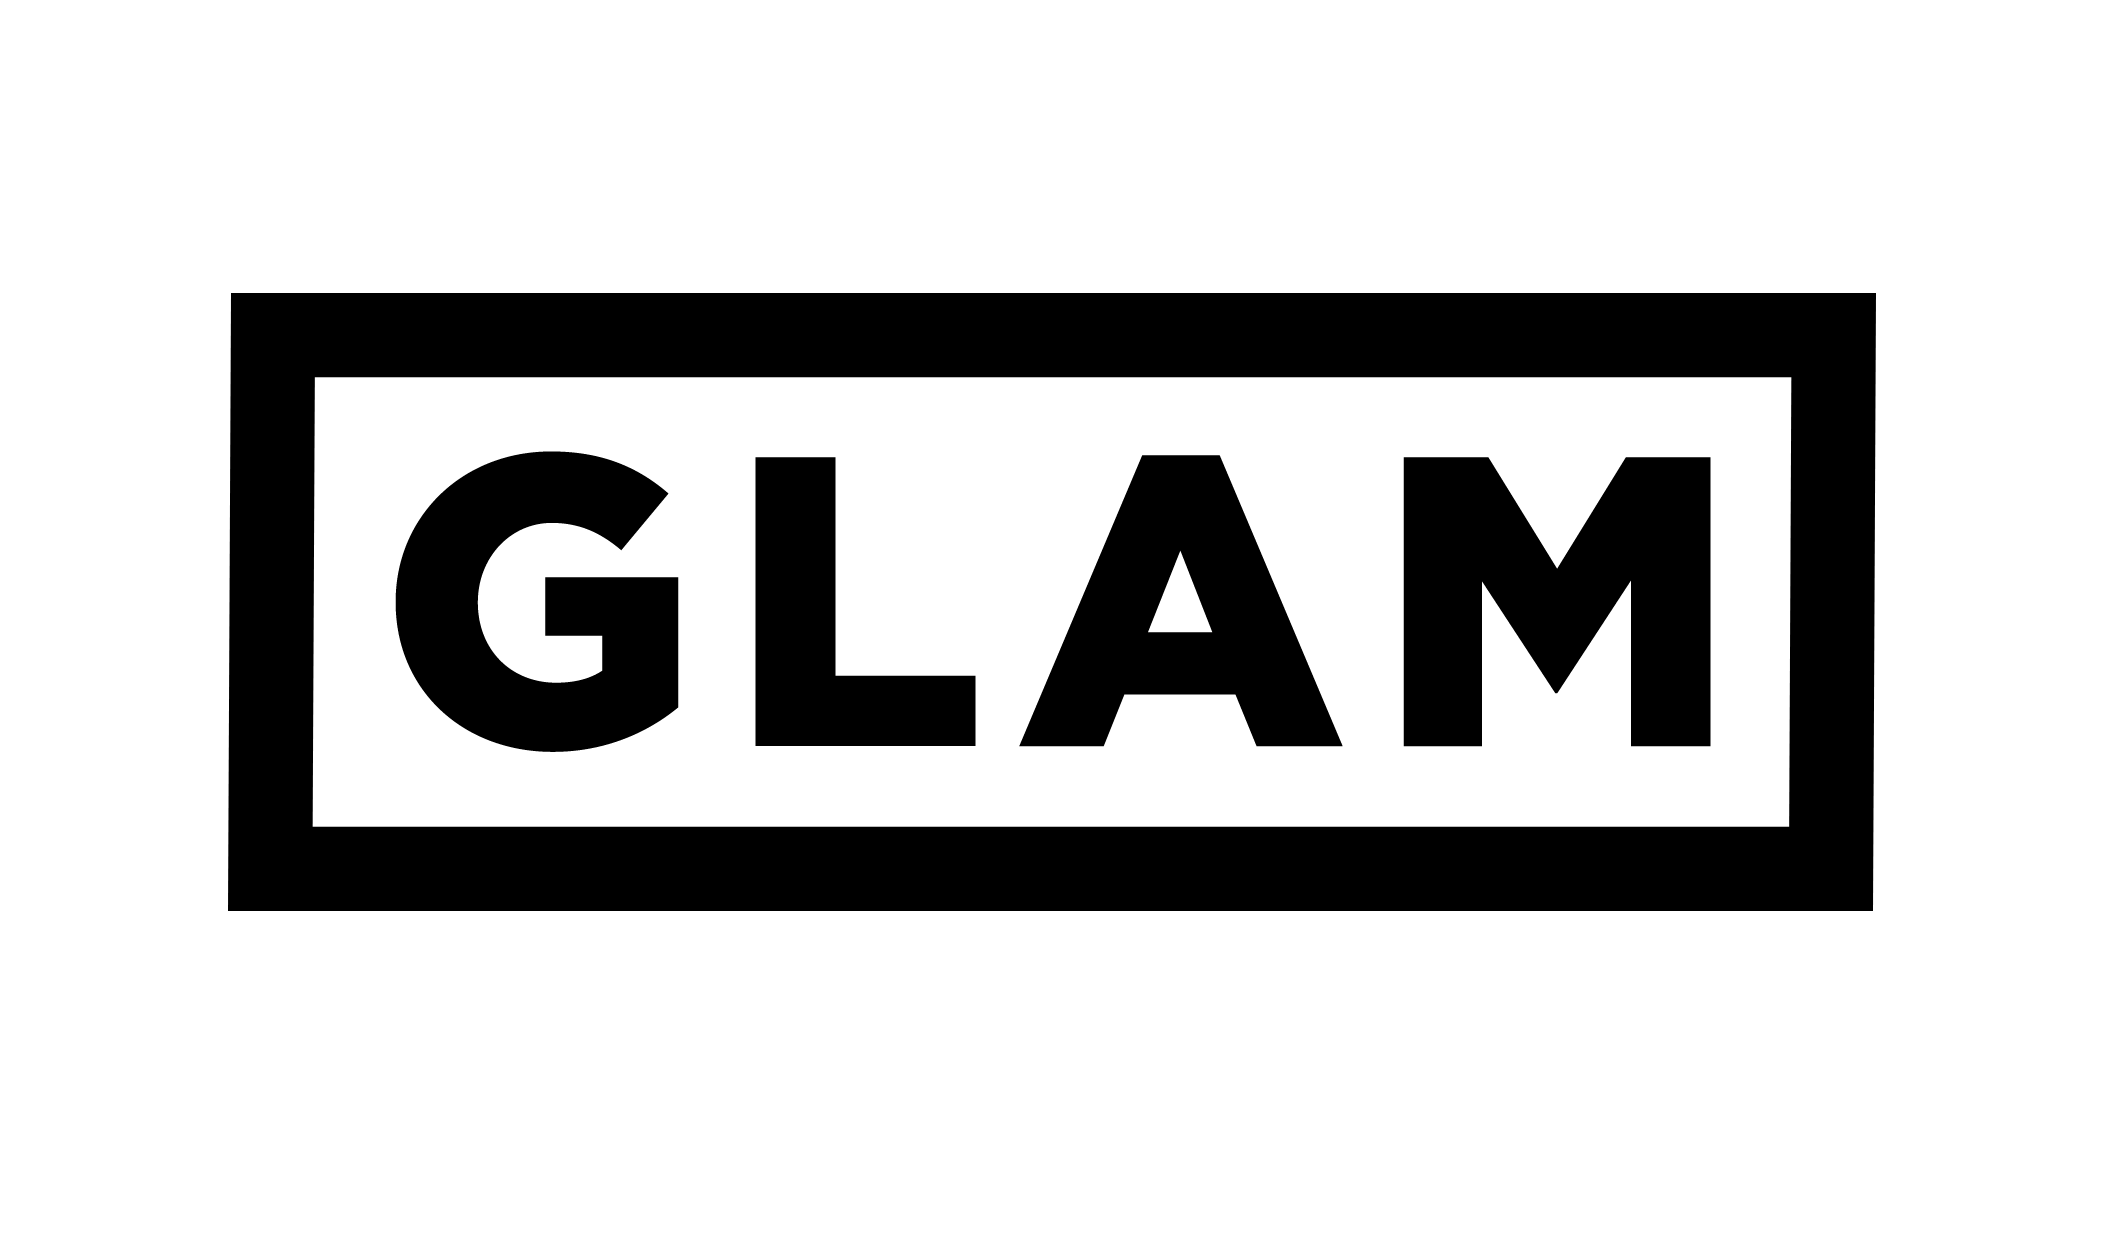 Glam Logo - GLAM logo.png